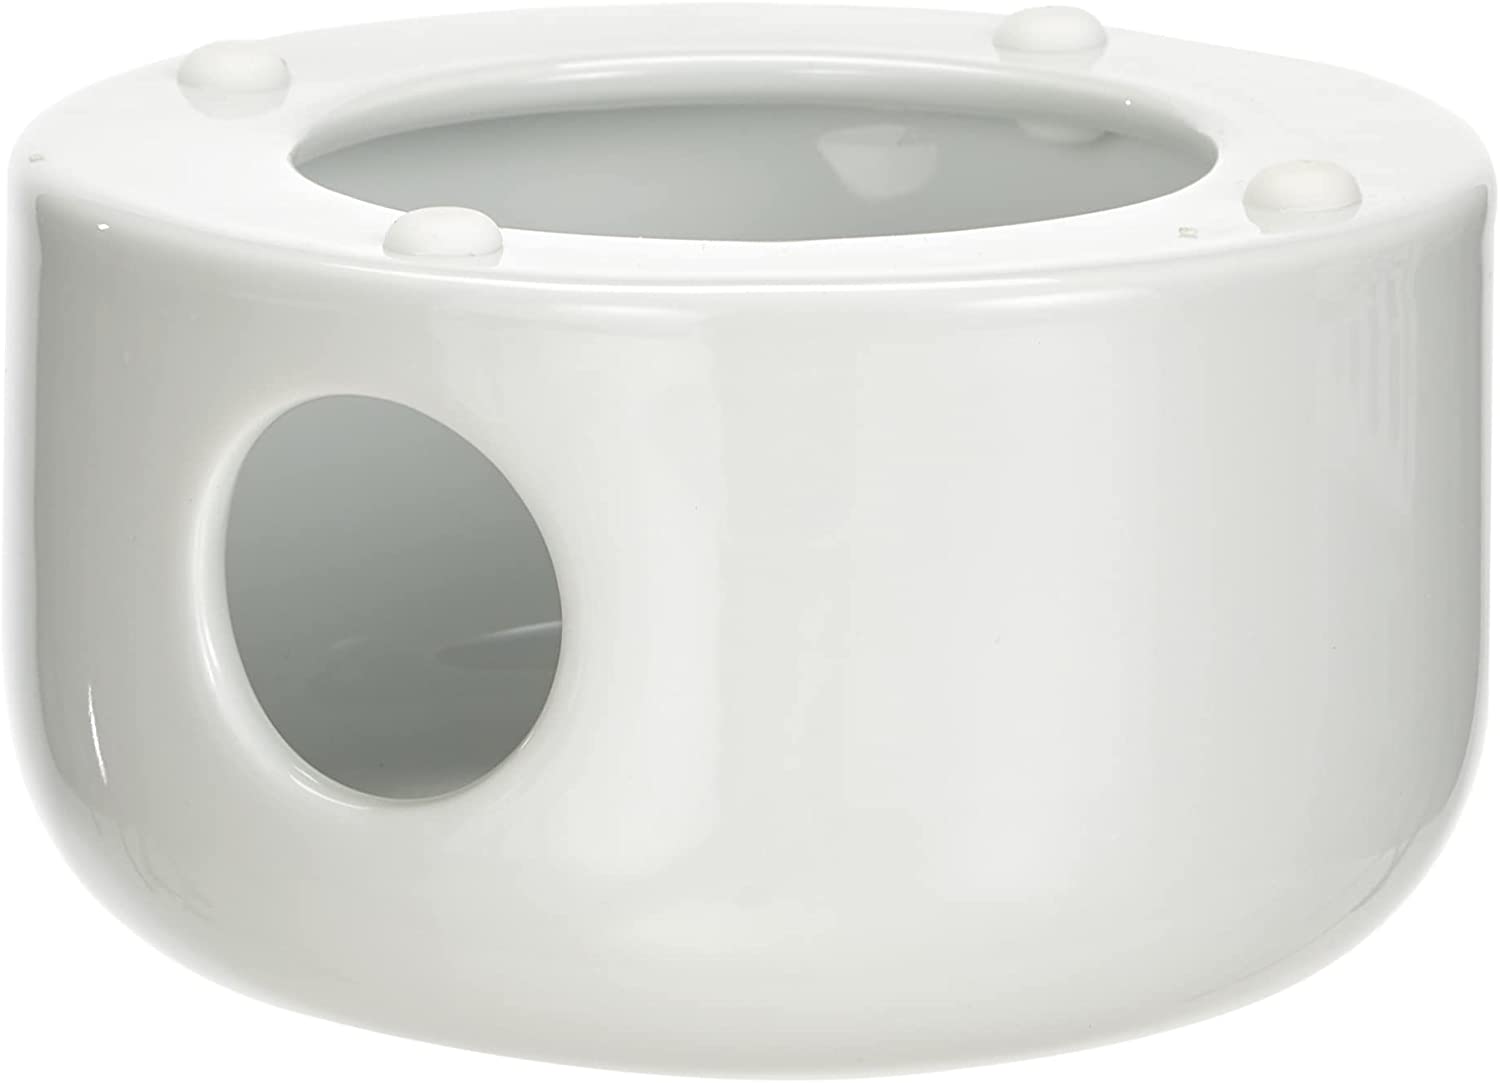 Heater for Glass Kettle Teapot - Menu